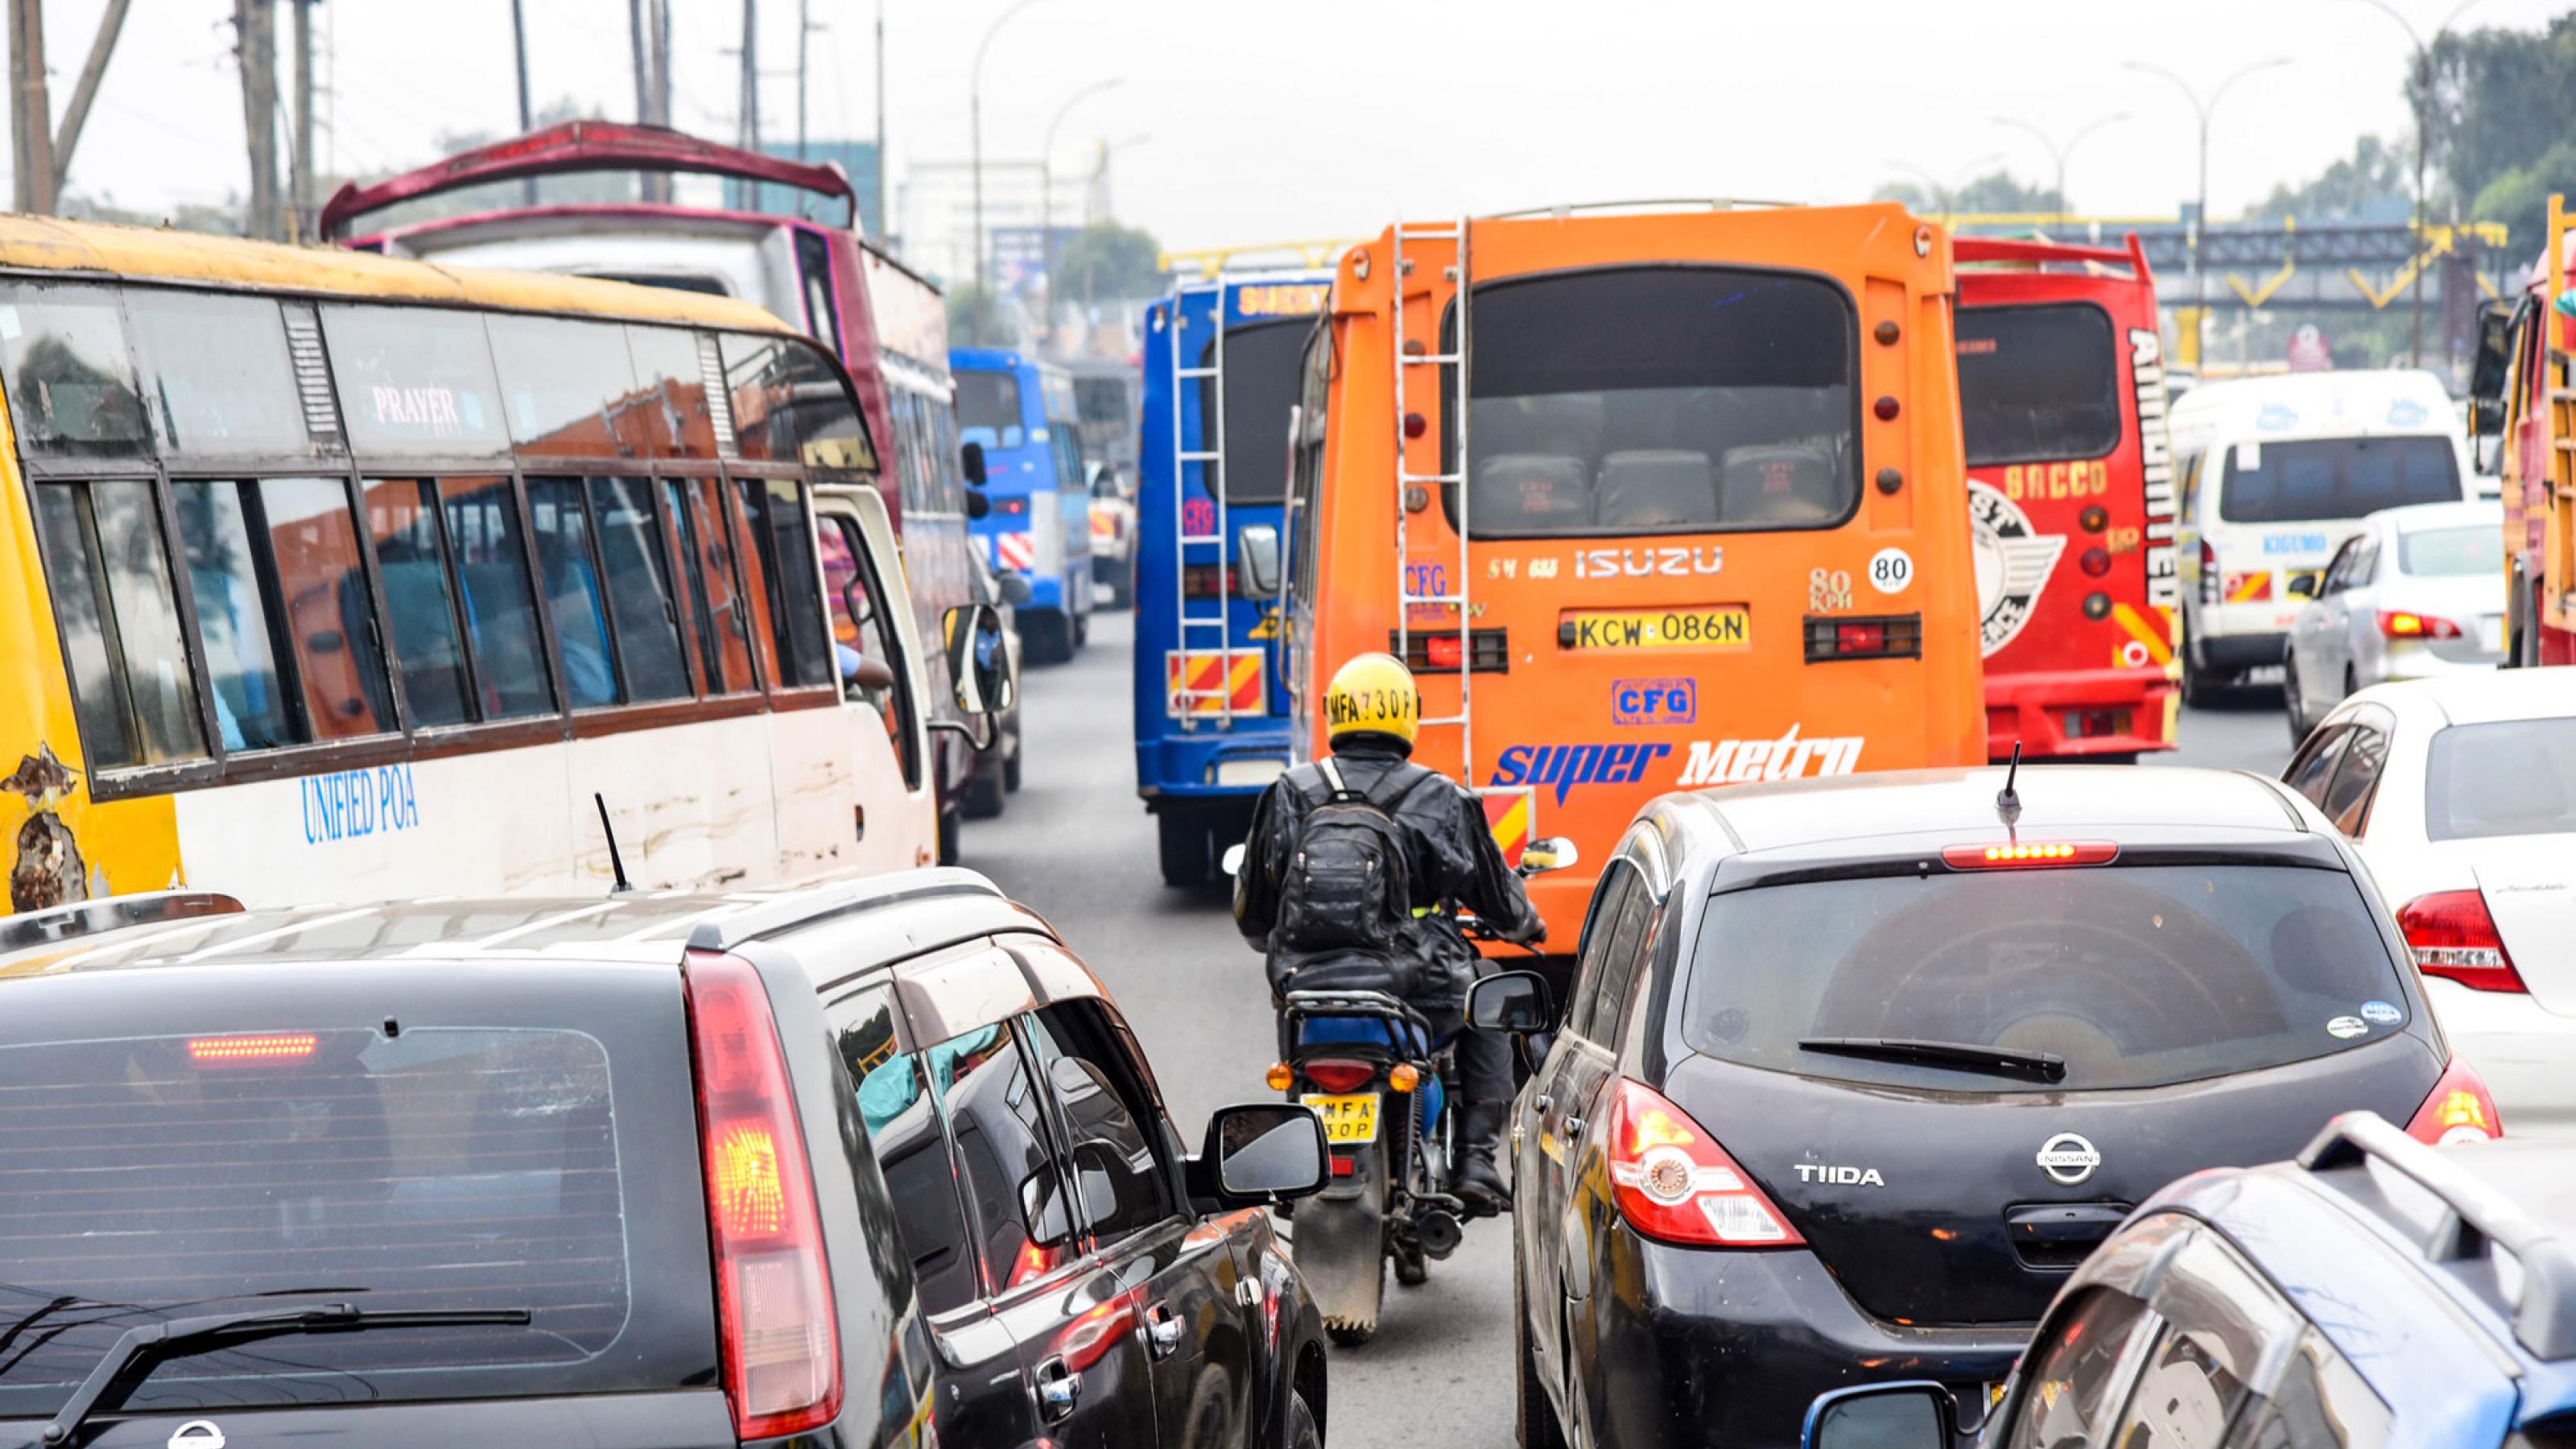 Das Foto zeigt dichten Verkehr und einen Motorradfahrer von hinten, der durch Schlangen stehender Fahrzeuge hindurch fährt.